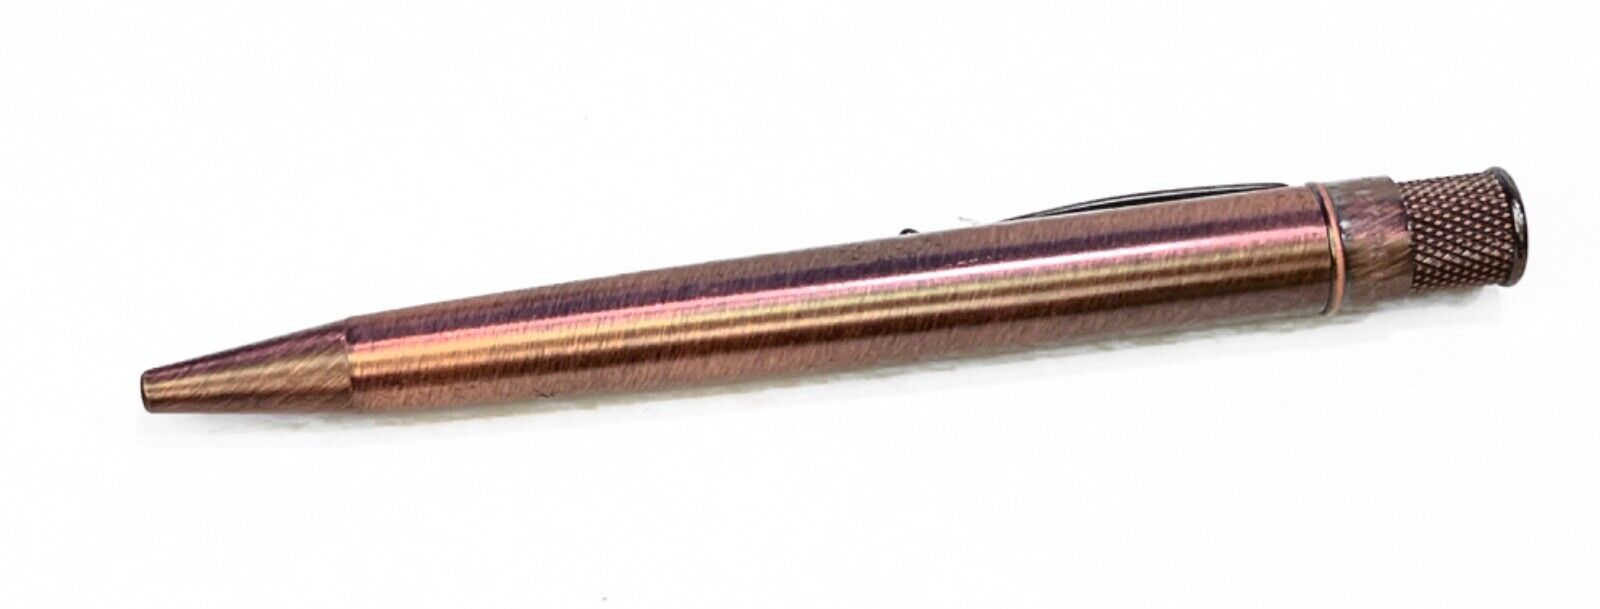 Retro 51 Tornado Lincoln Antique Copper Rollerball Pen VRR-1331